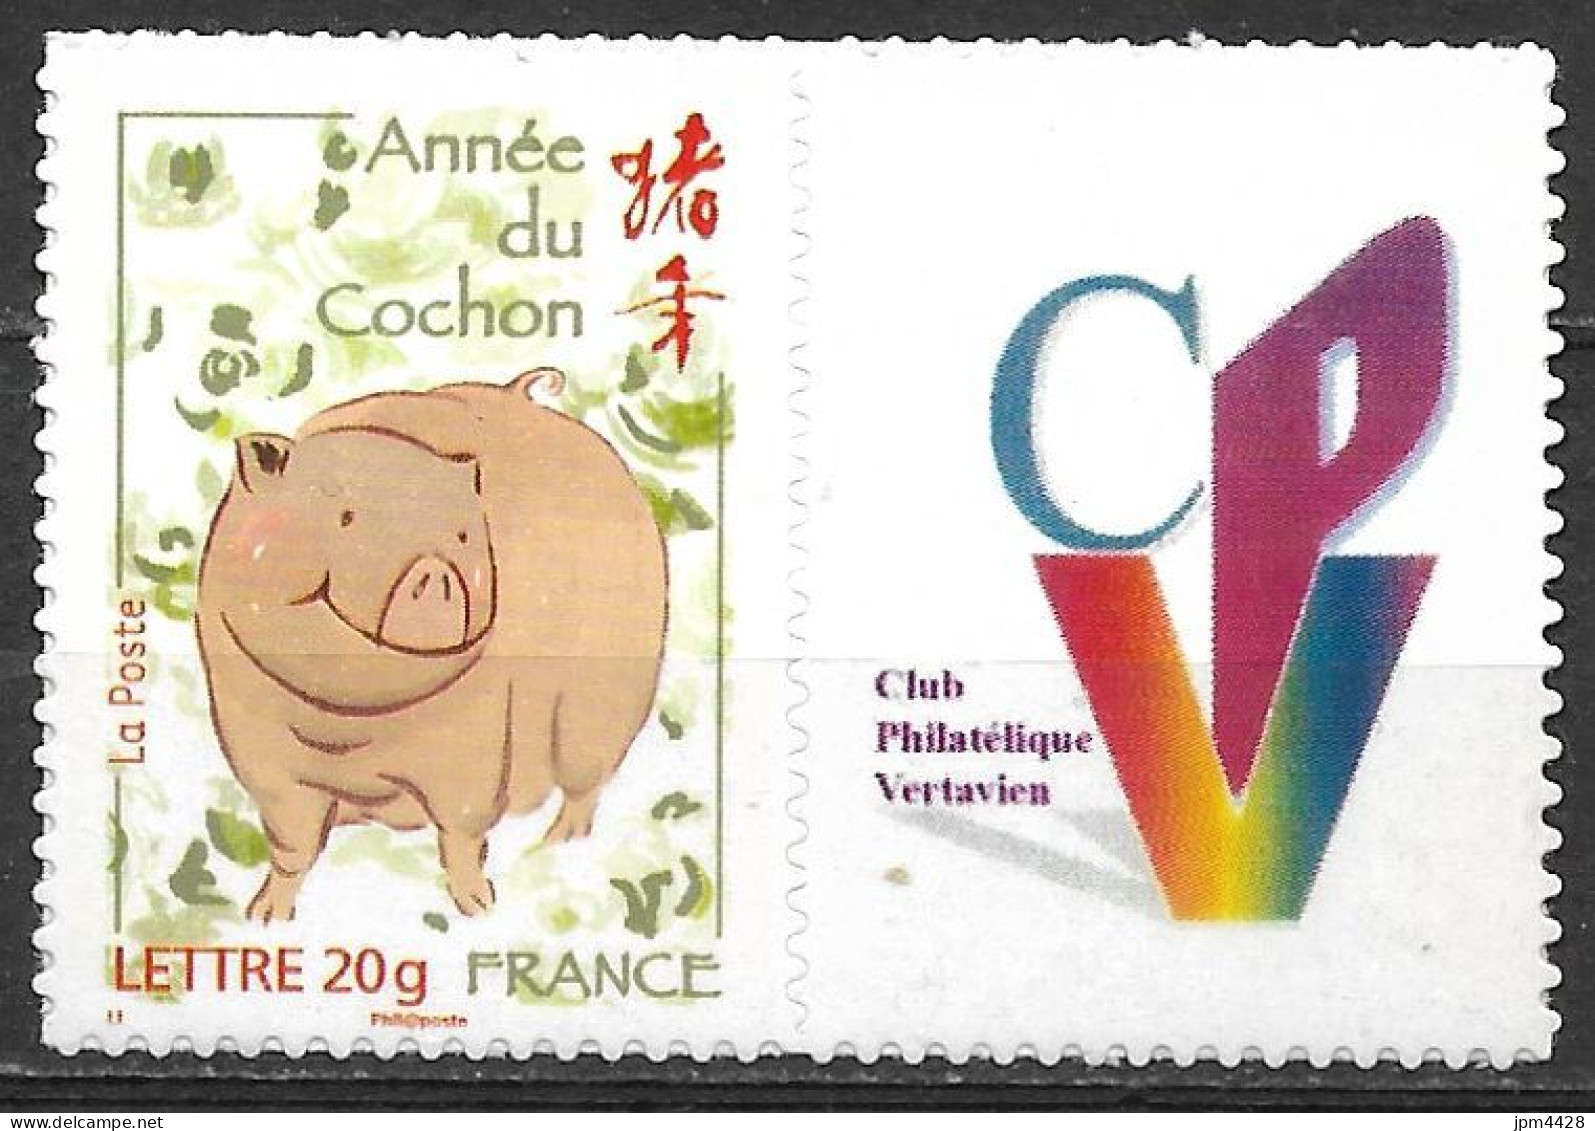 France -  4001 B Nouvel An Chinois Année Du Cochon  Personnalisé Logo Du CPV  Neuf** Adhésif - Autocollant - Unused Stamps